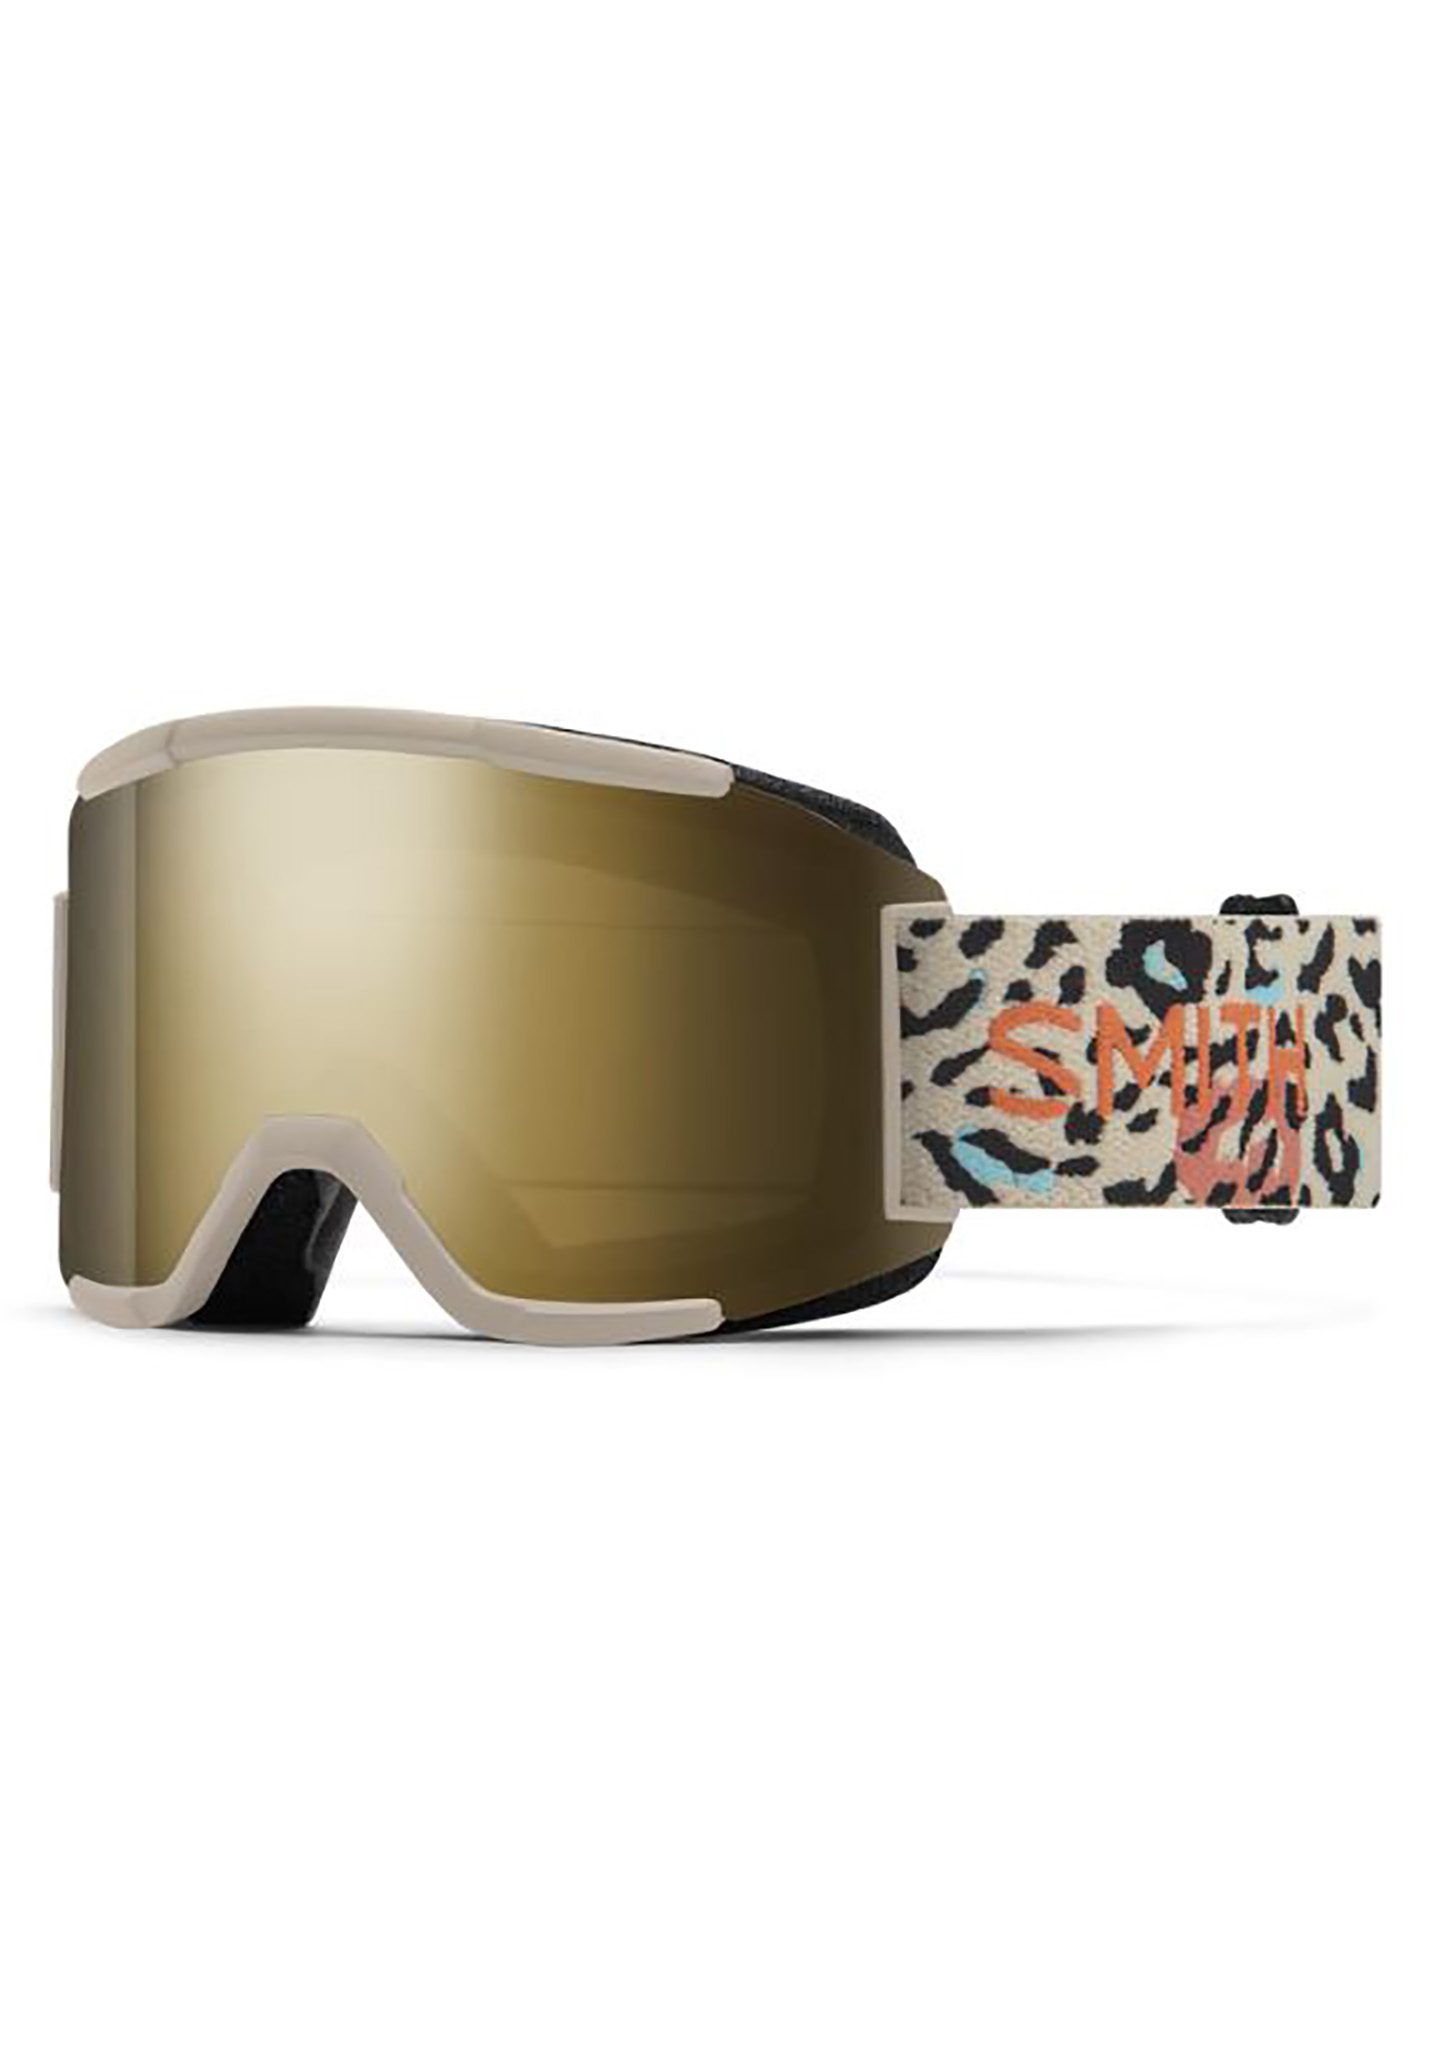 Smith Squad Snowboardbrillen birke seltsame geschöpfe/sonne schwarz gold spiegel One Size